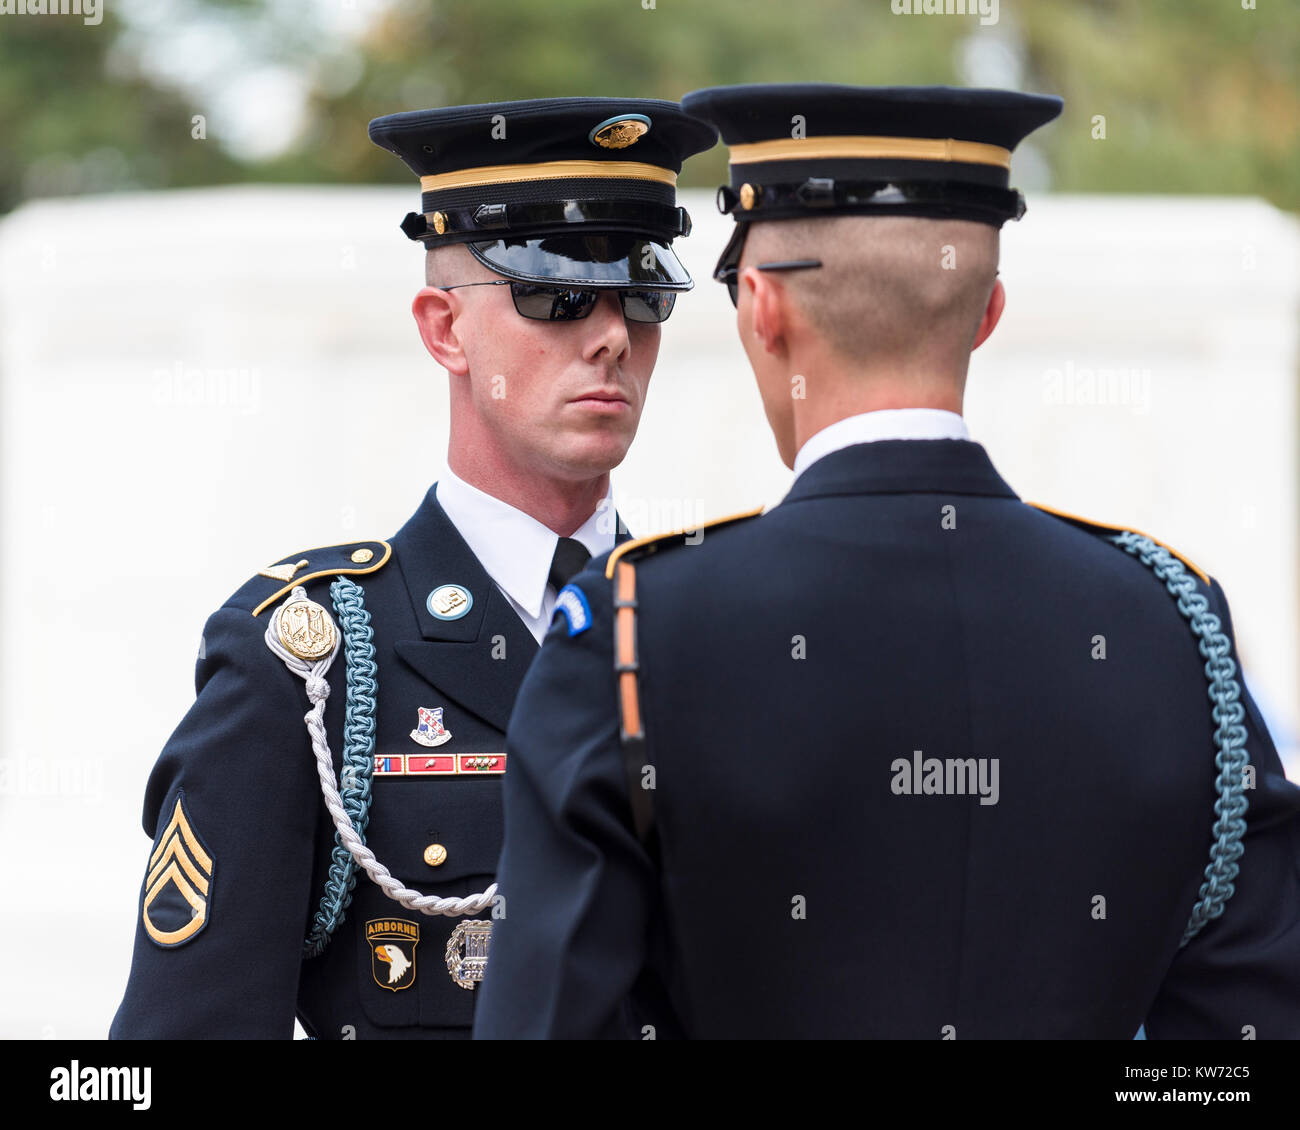 La tombe de l'inconnu, le Cimetière National d'Arlington, États-Unis. Le sergent l'inspection d'un soldat sur le point d'aller en devoir Banque D'Images